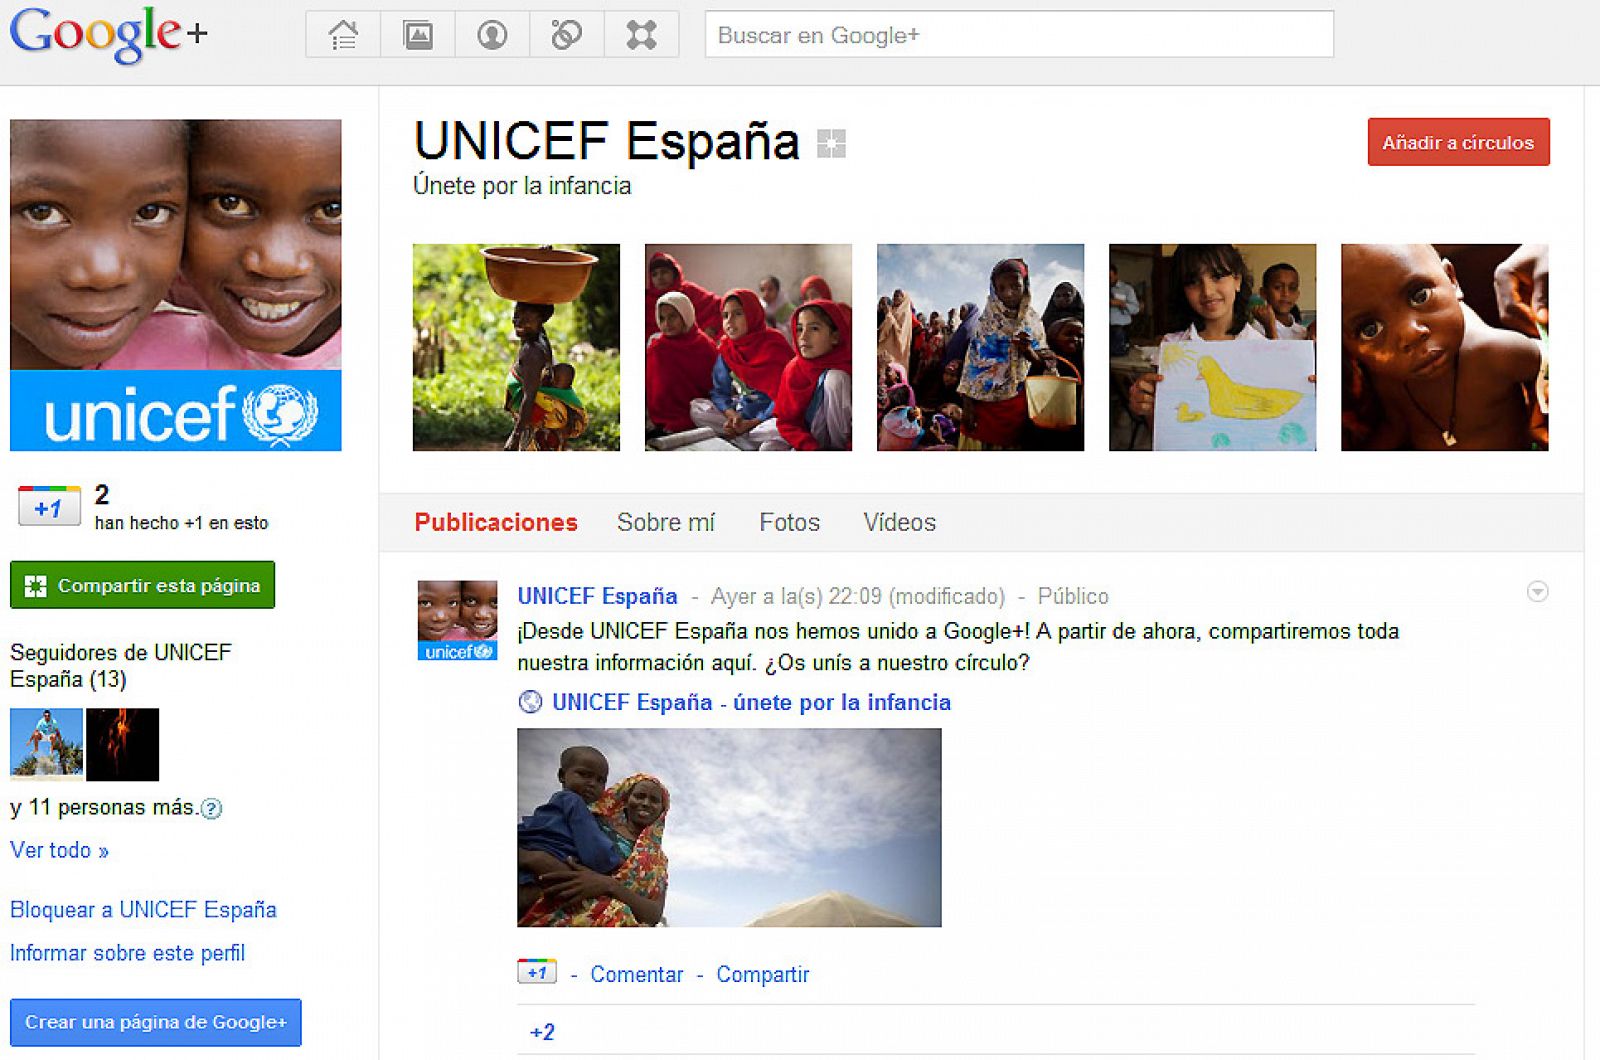 La página corporativa de UNICEF España en Google+